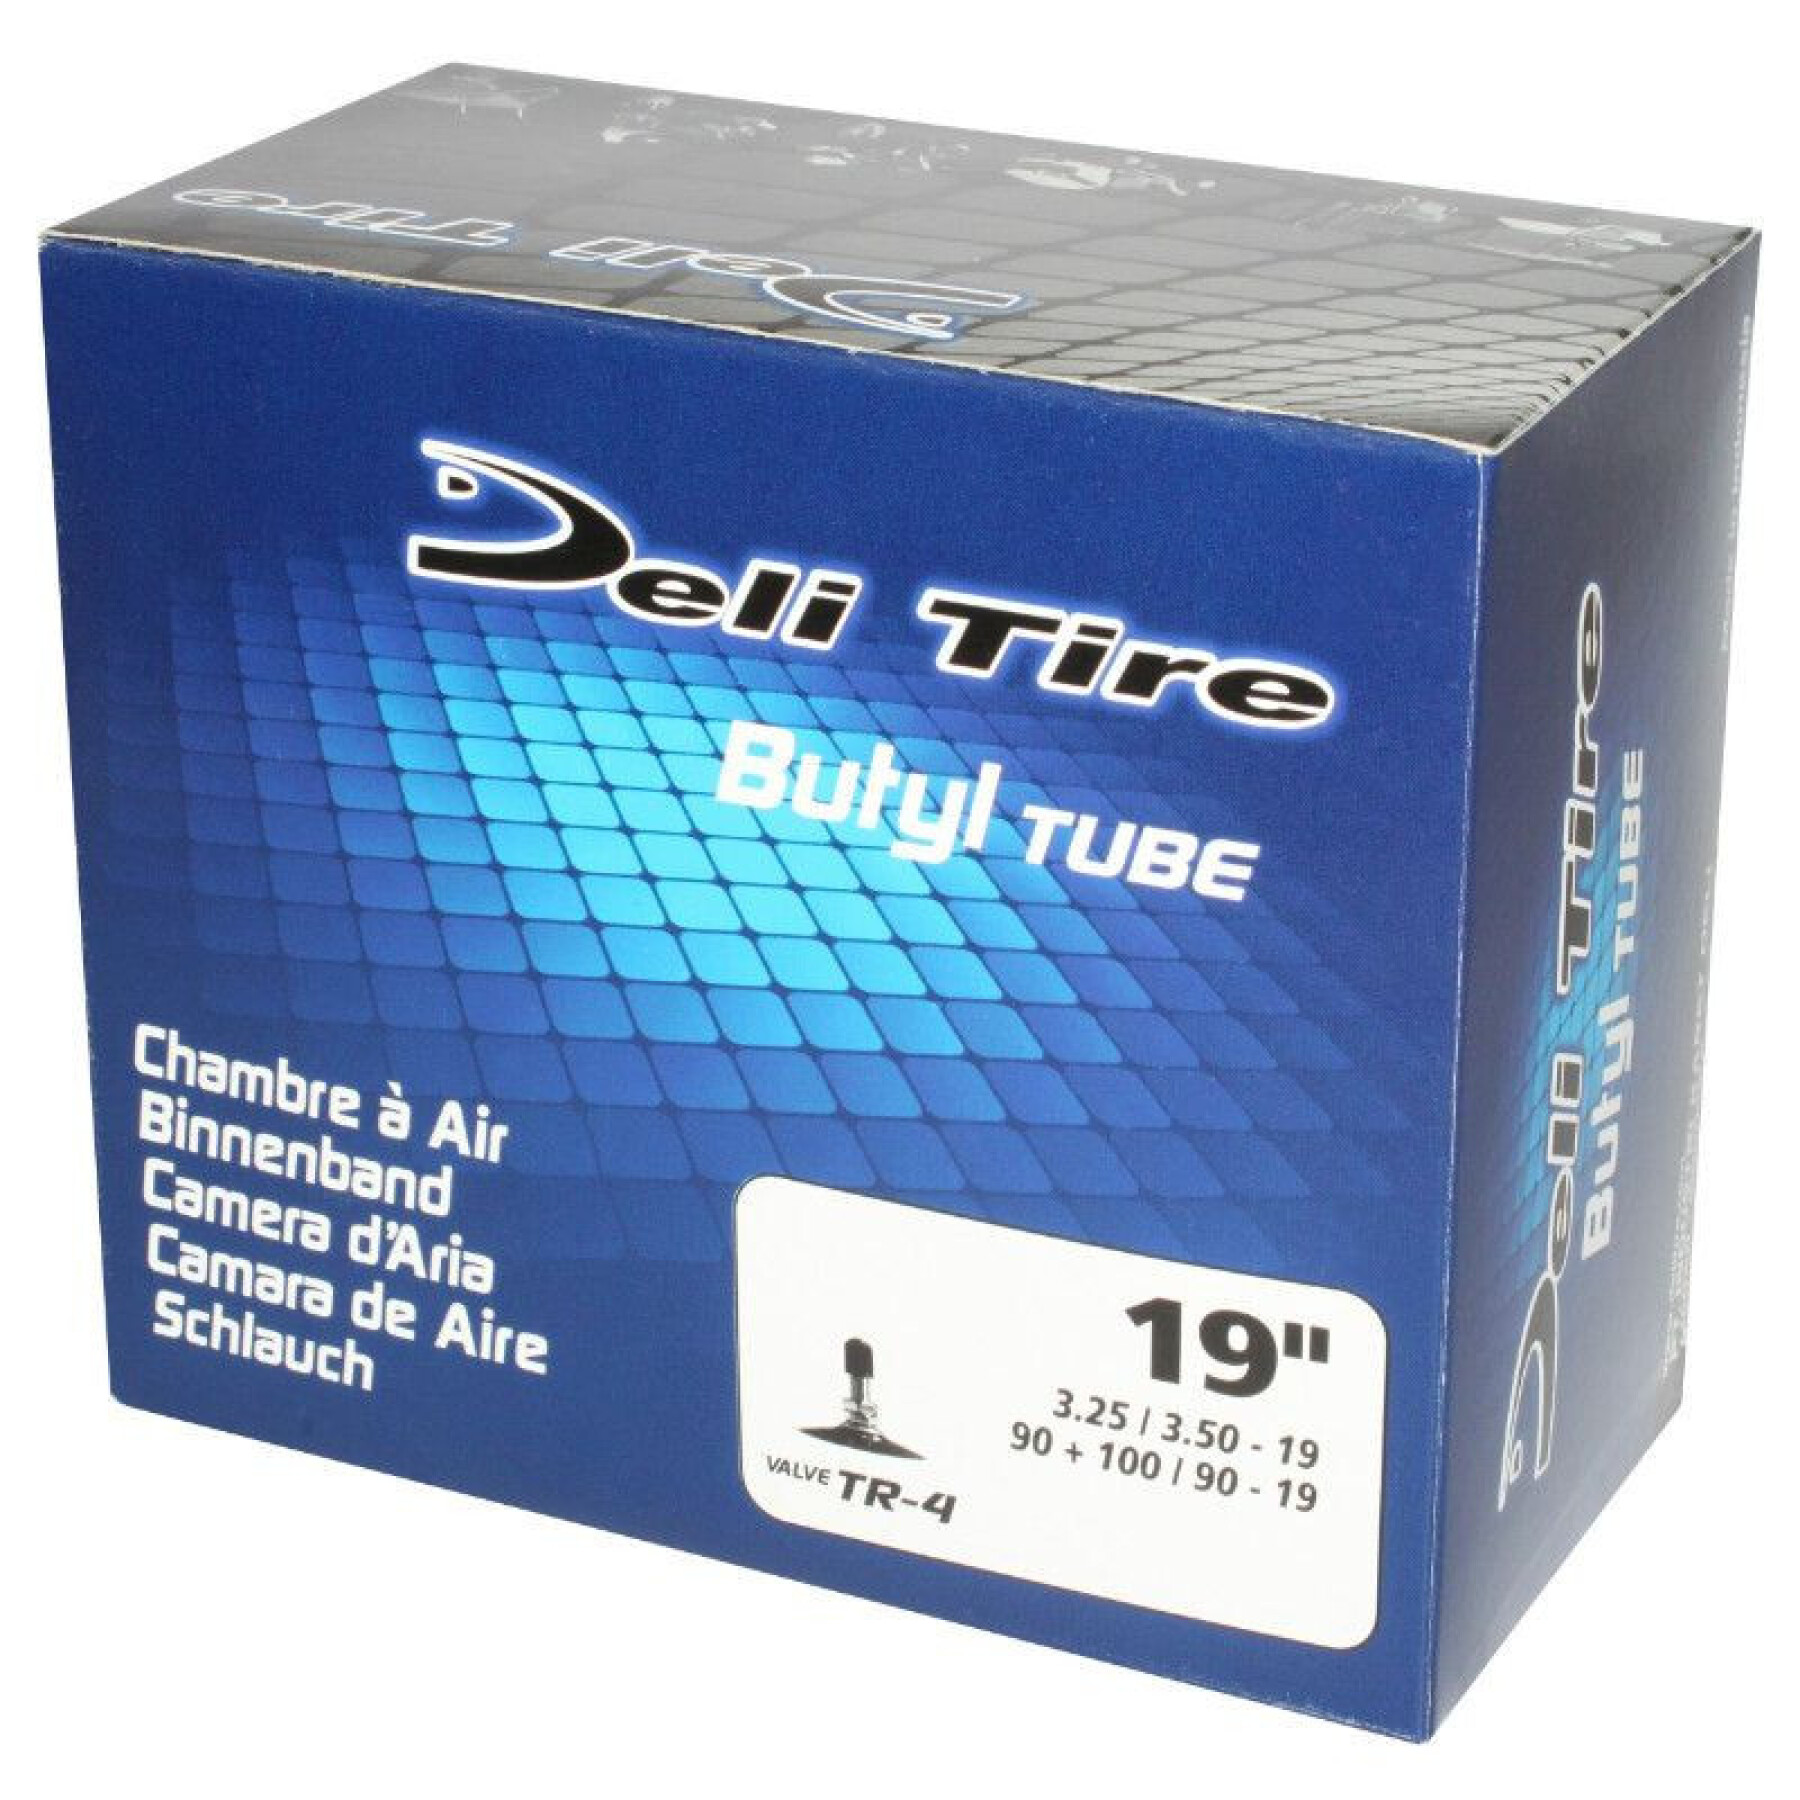 Inner tube Deli Tire 3.25 A 3.50-19, 90-90-19, 100-90-19 Tr4